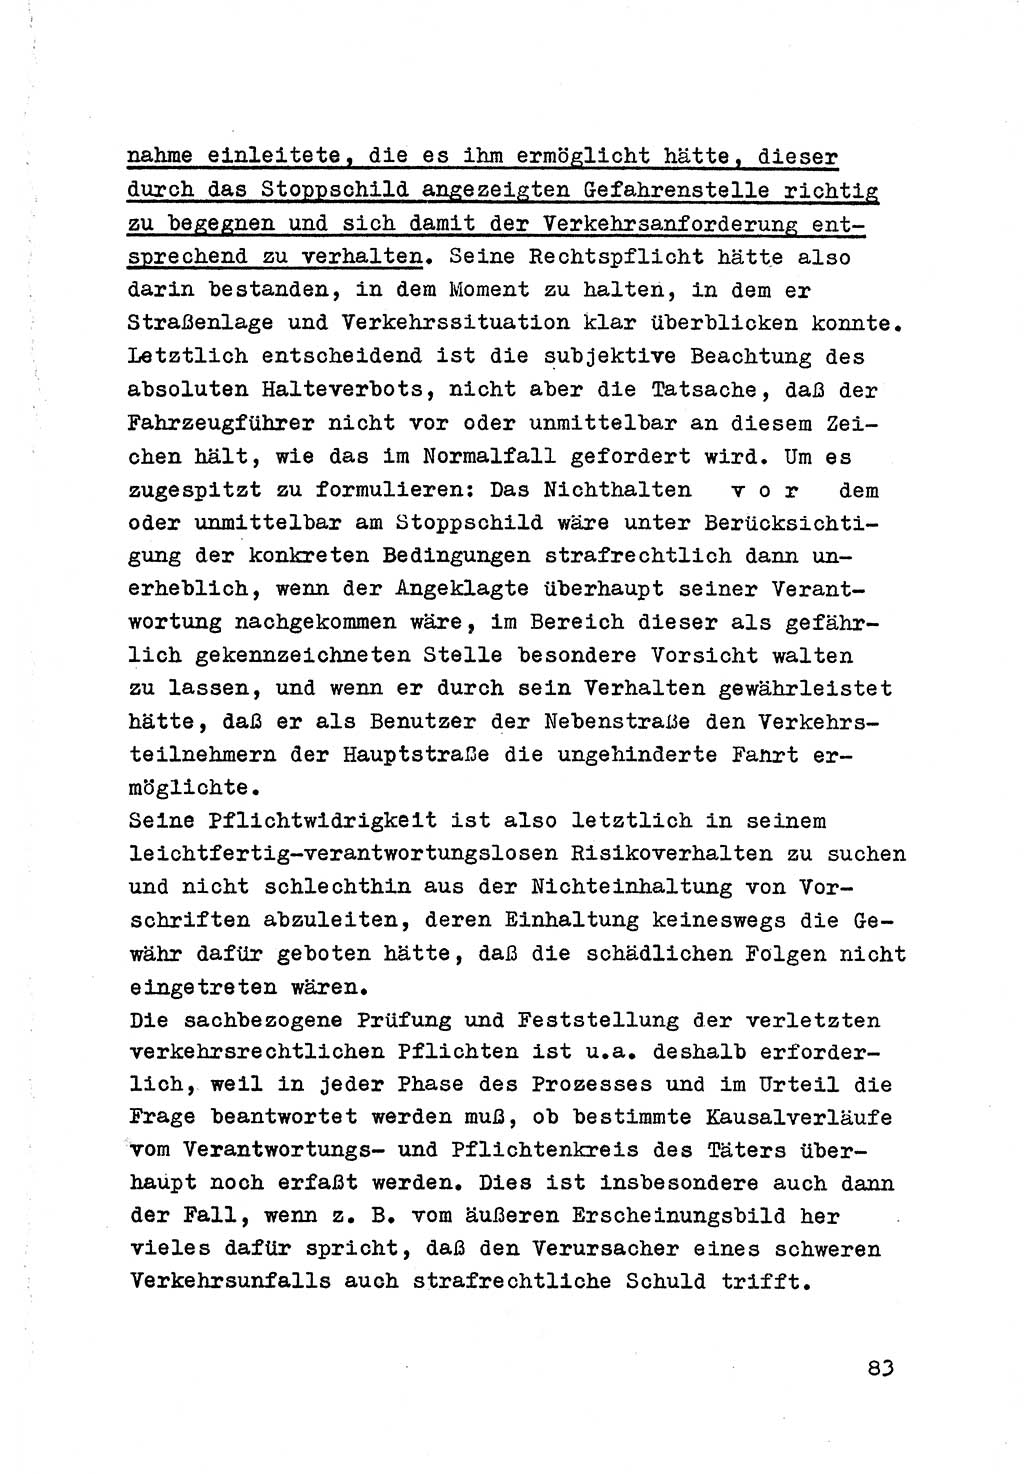 Strafrecht der DDR (Deutsche Demokratische Republik), Besonderer Teil, Lehrmaterial, Heft 7 1970, Seite 83 (Strafr. DDR BT Lehrmat. H. 7 1970, S. 83)